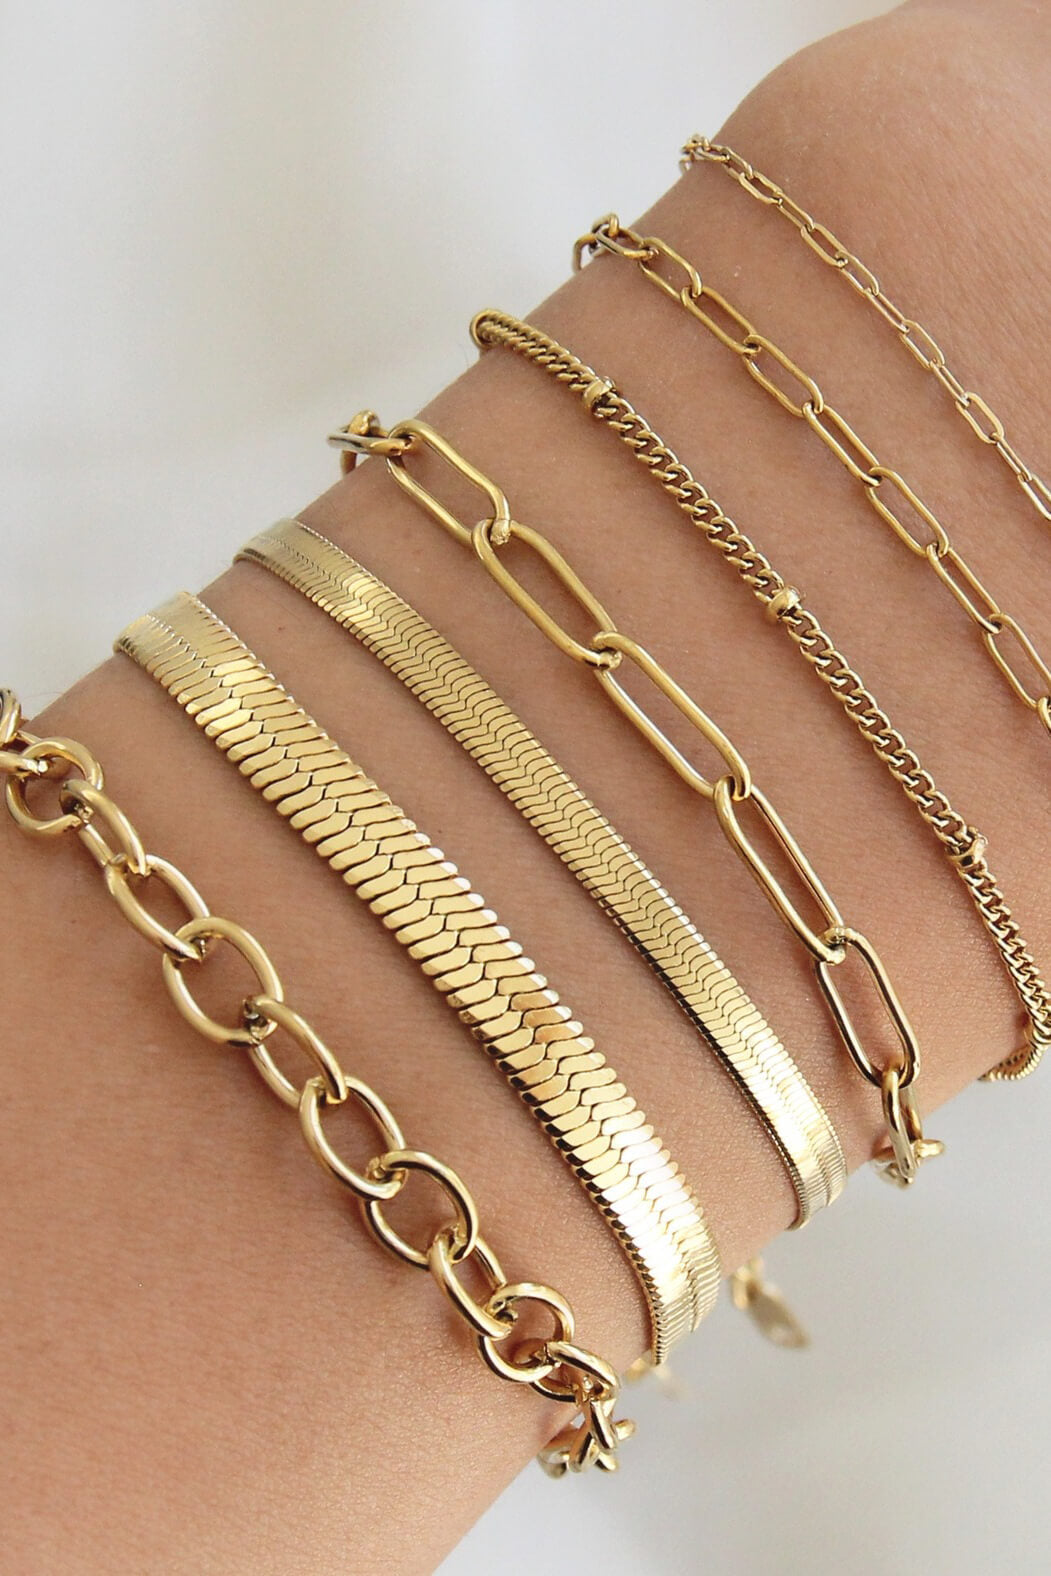 Maive 5mm herringbone chain bracelet in 18k gold